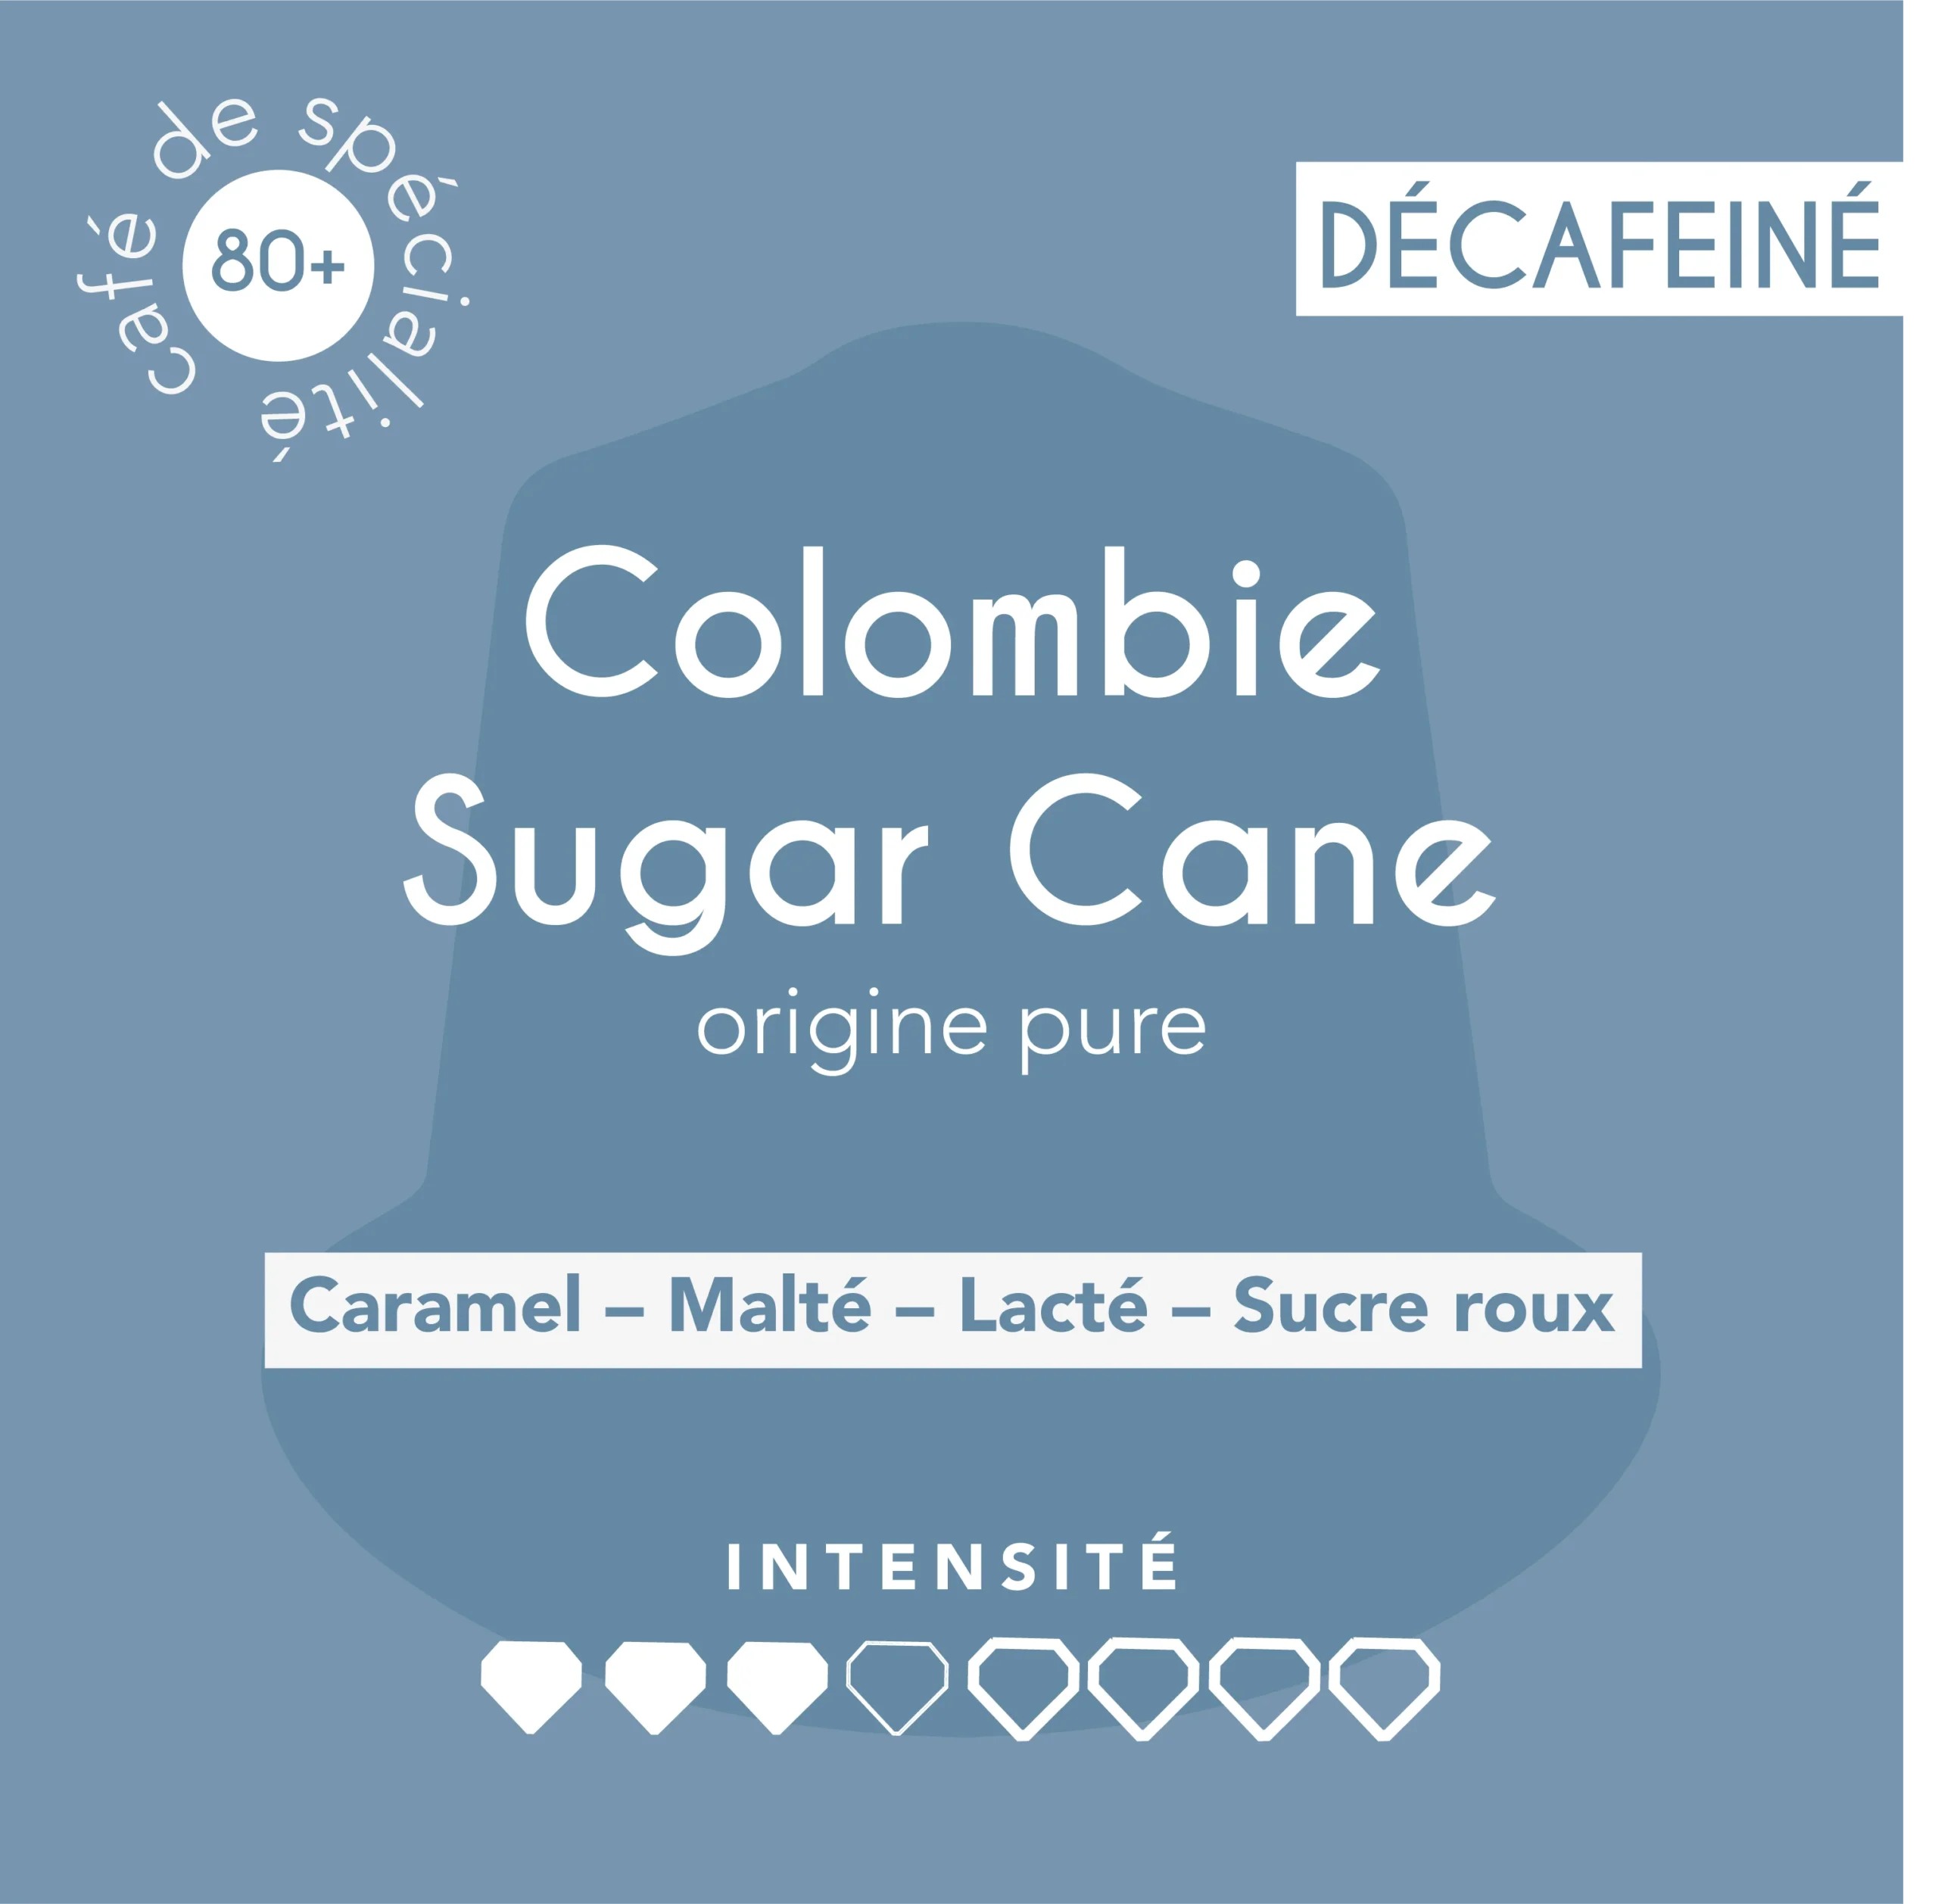 Capsule de décaféiné-Colombie Sugar Cane